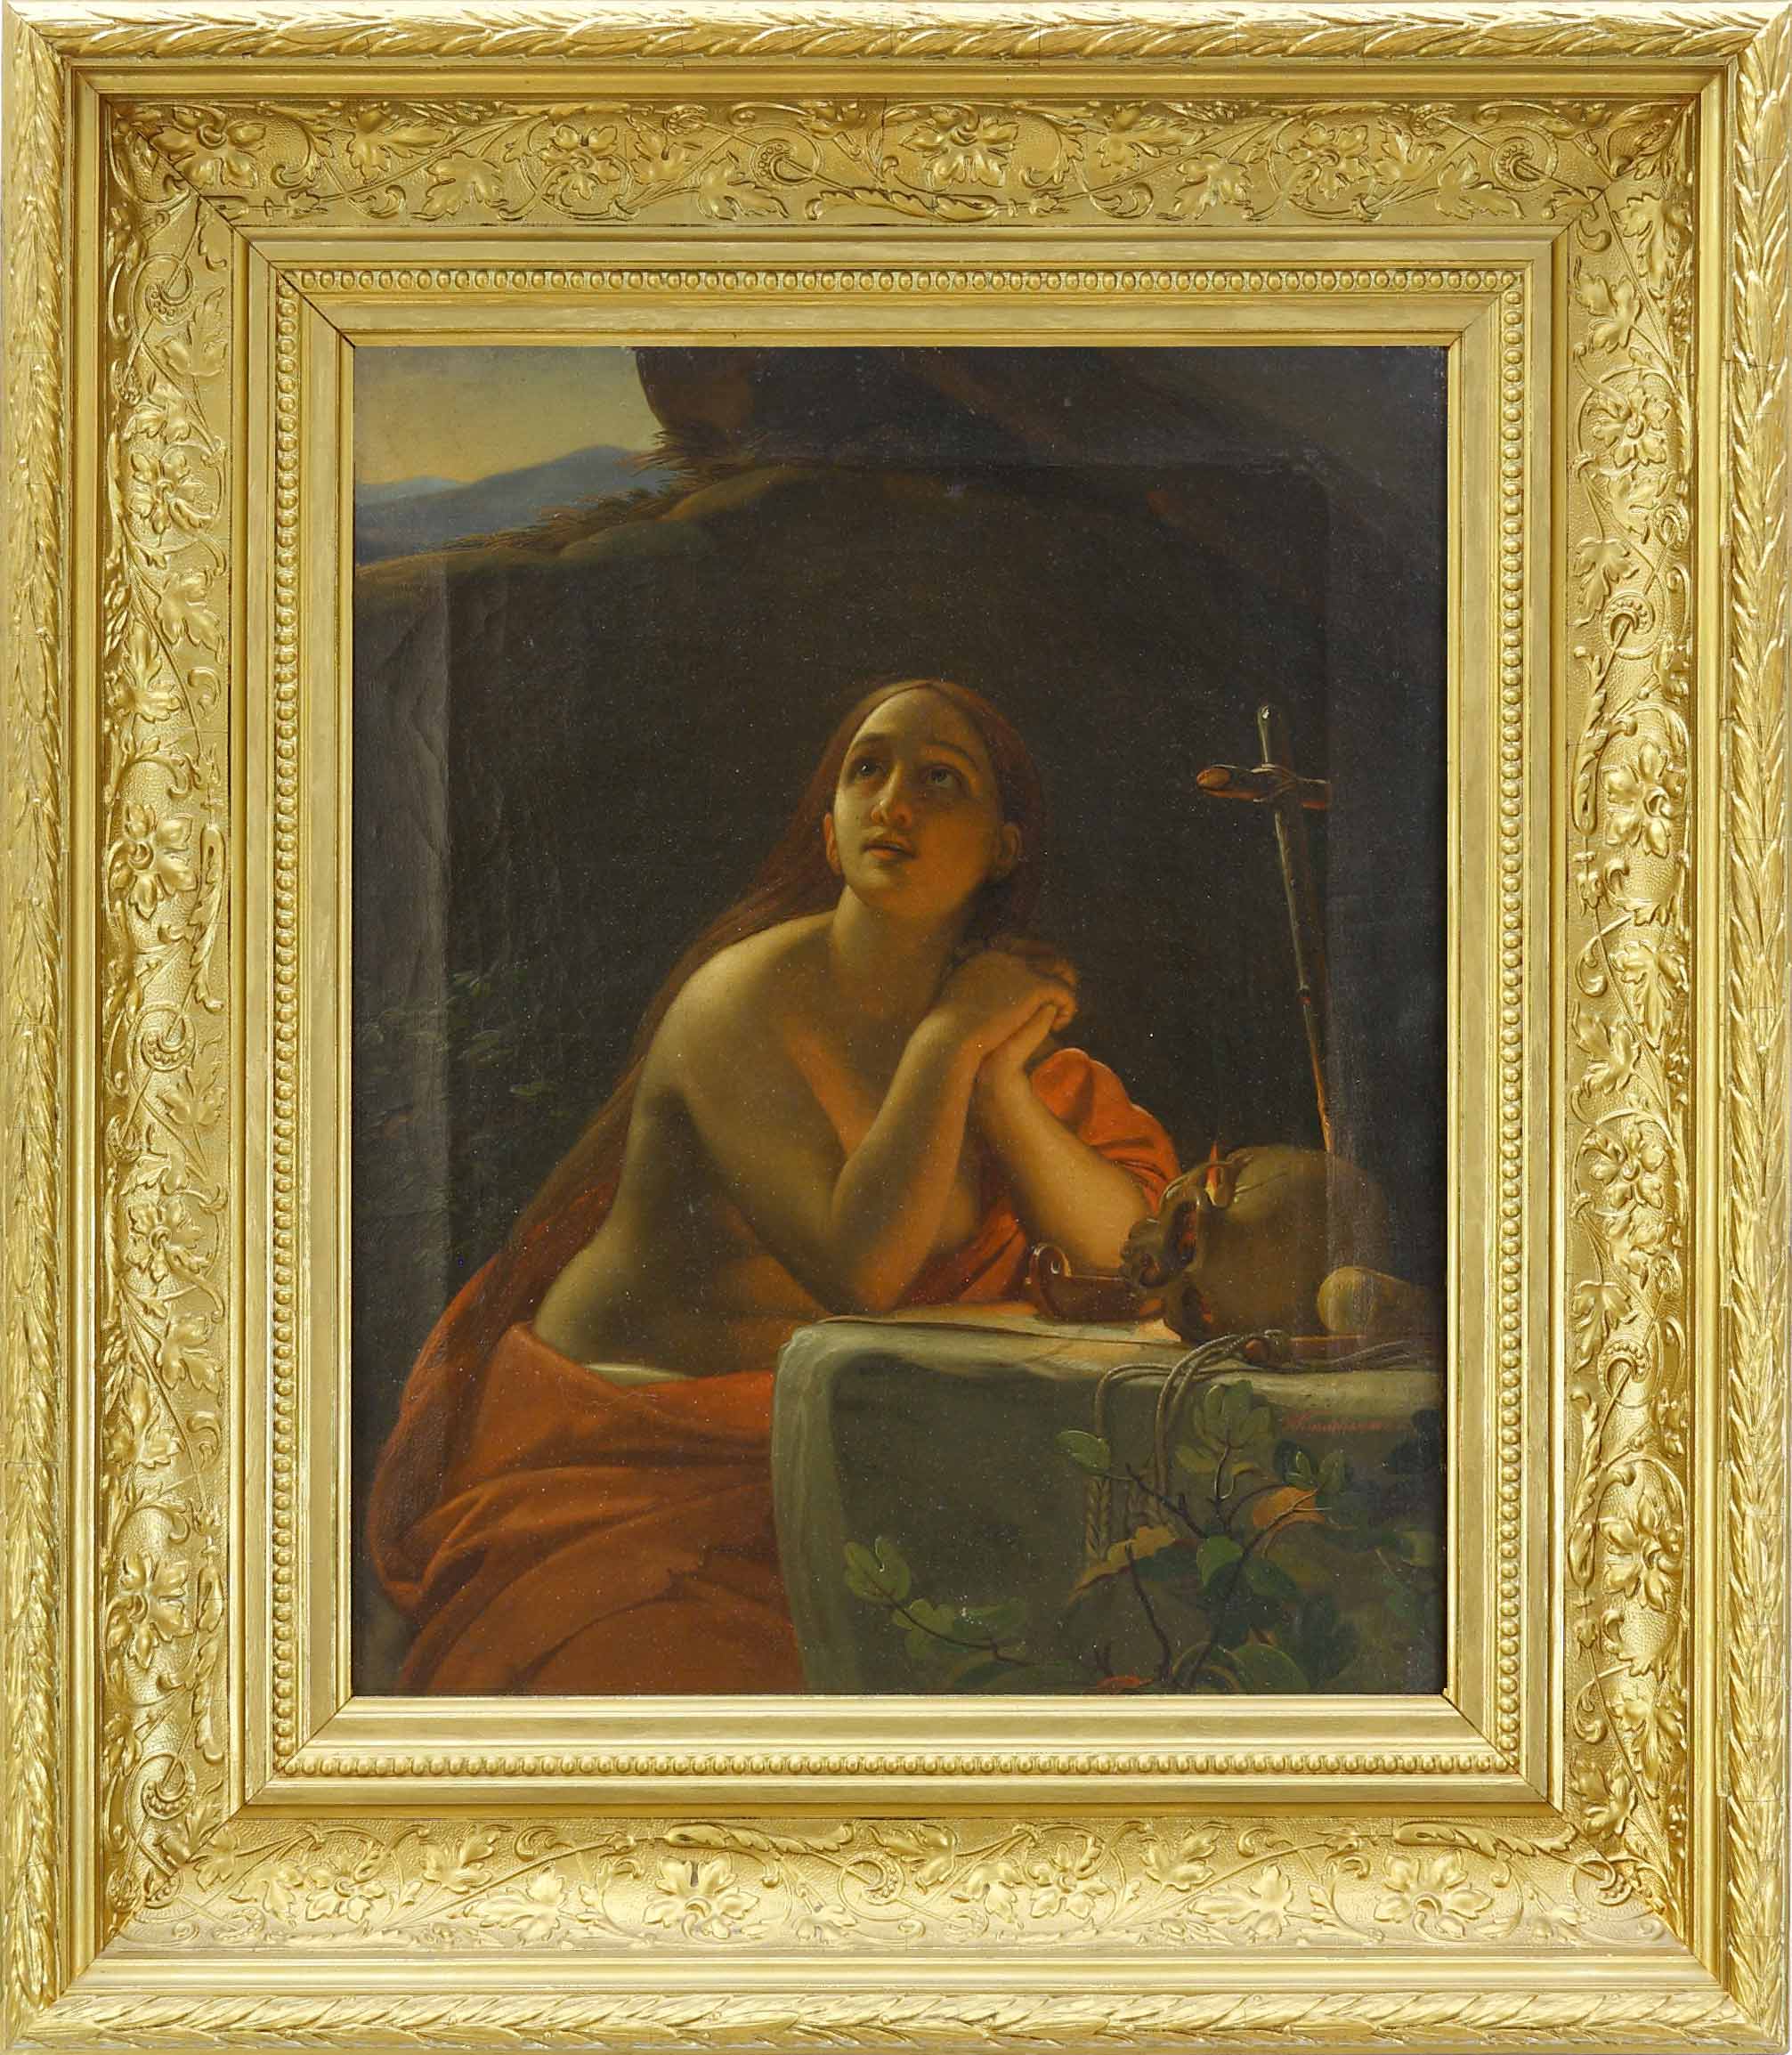 Auktionshaus Quentin Berlin  Gemälde WÃ¼nschmann  Friedrich August (1819 Glauchau â 1889) Die bÃ¼Ãende Magdalena. Ãl auf Leinwand. 43 7 x 35 5 cm. Signiert. Gerahmt. - WÃ